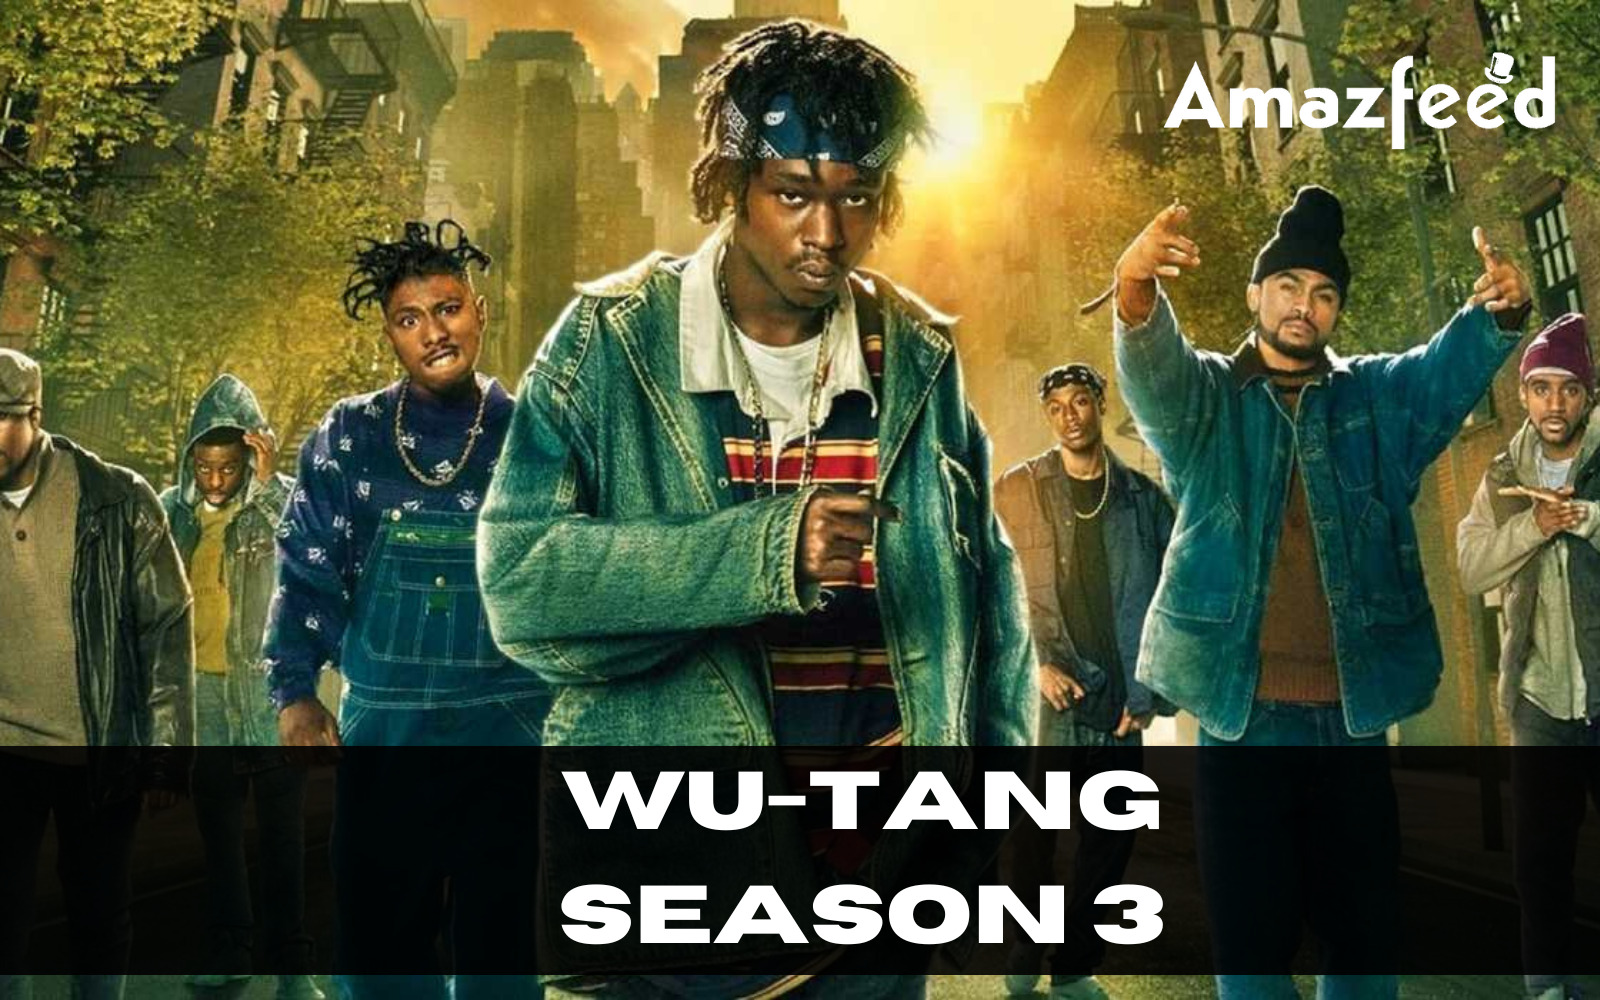 Who Will Be Part Of Wu-Tang Season 3